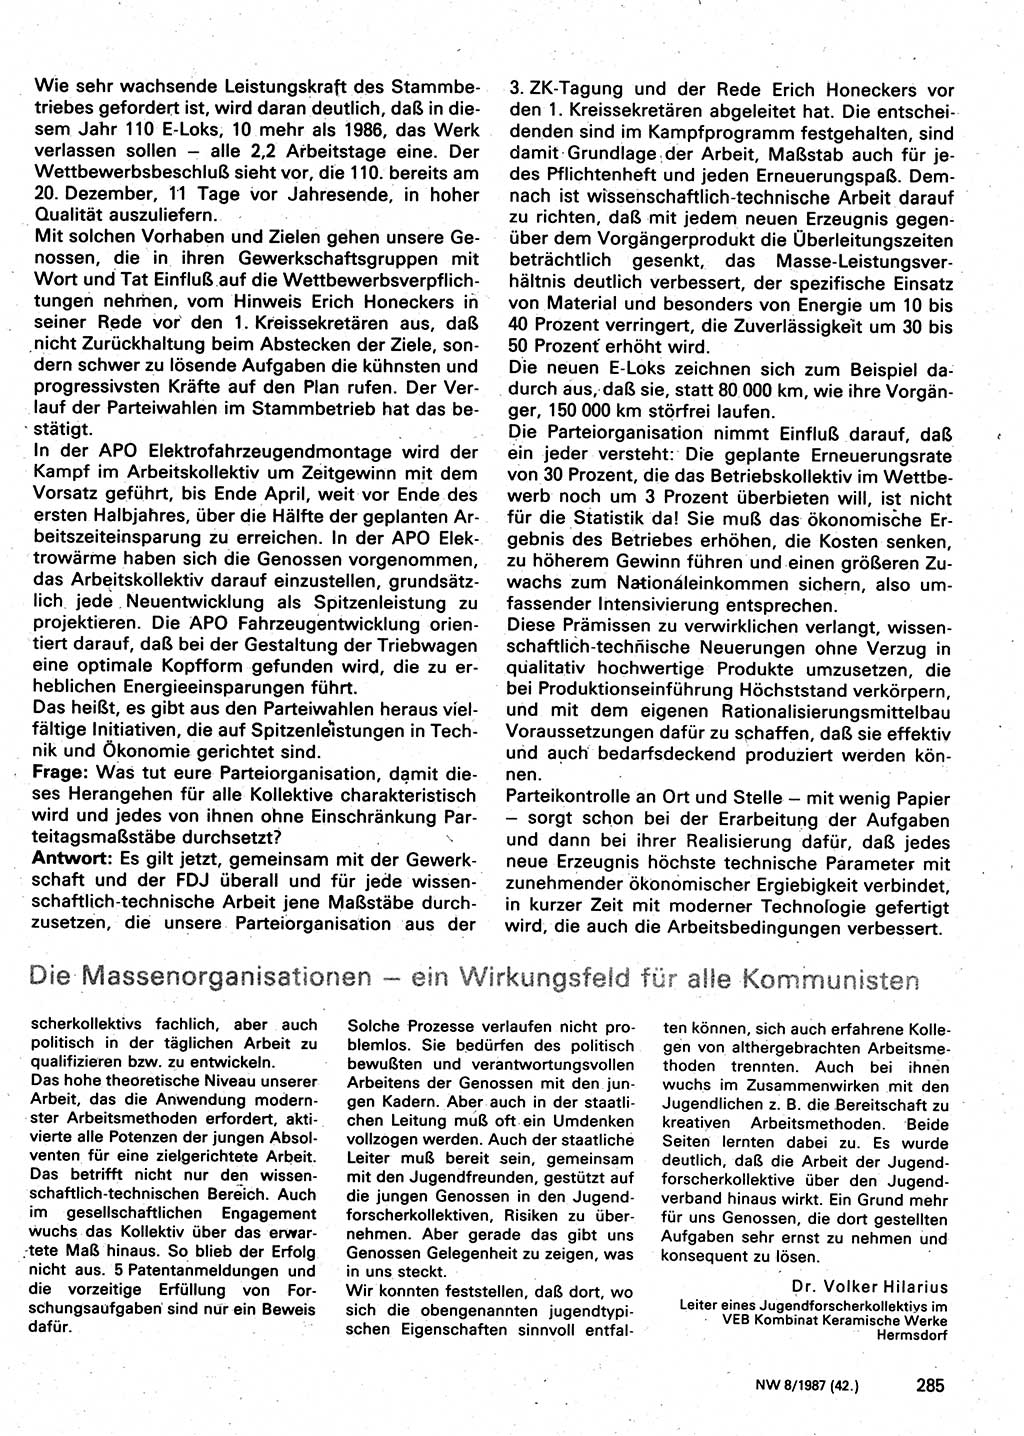 Neuer Weg (NW), Organ des Zentralkomitees (ZK) der SED (Sozialistische Einheitspartei Deutschlands) für Fragen des Parteilebens, 42. Jahrgang [Deutsche Demokratische Republik (DDR)] 1987, Seite 285 (NW ZK SED DDR 1987, S. 285)